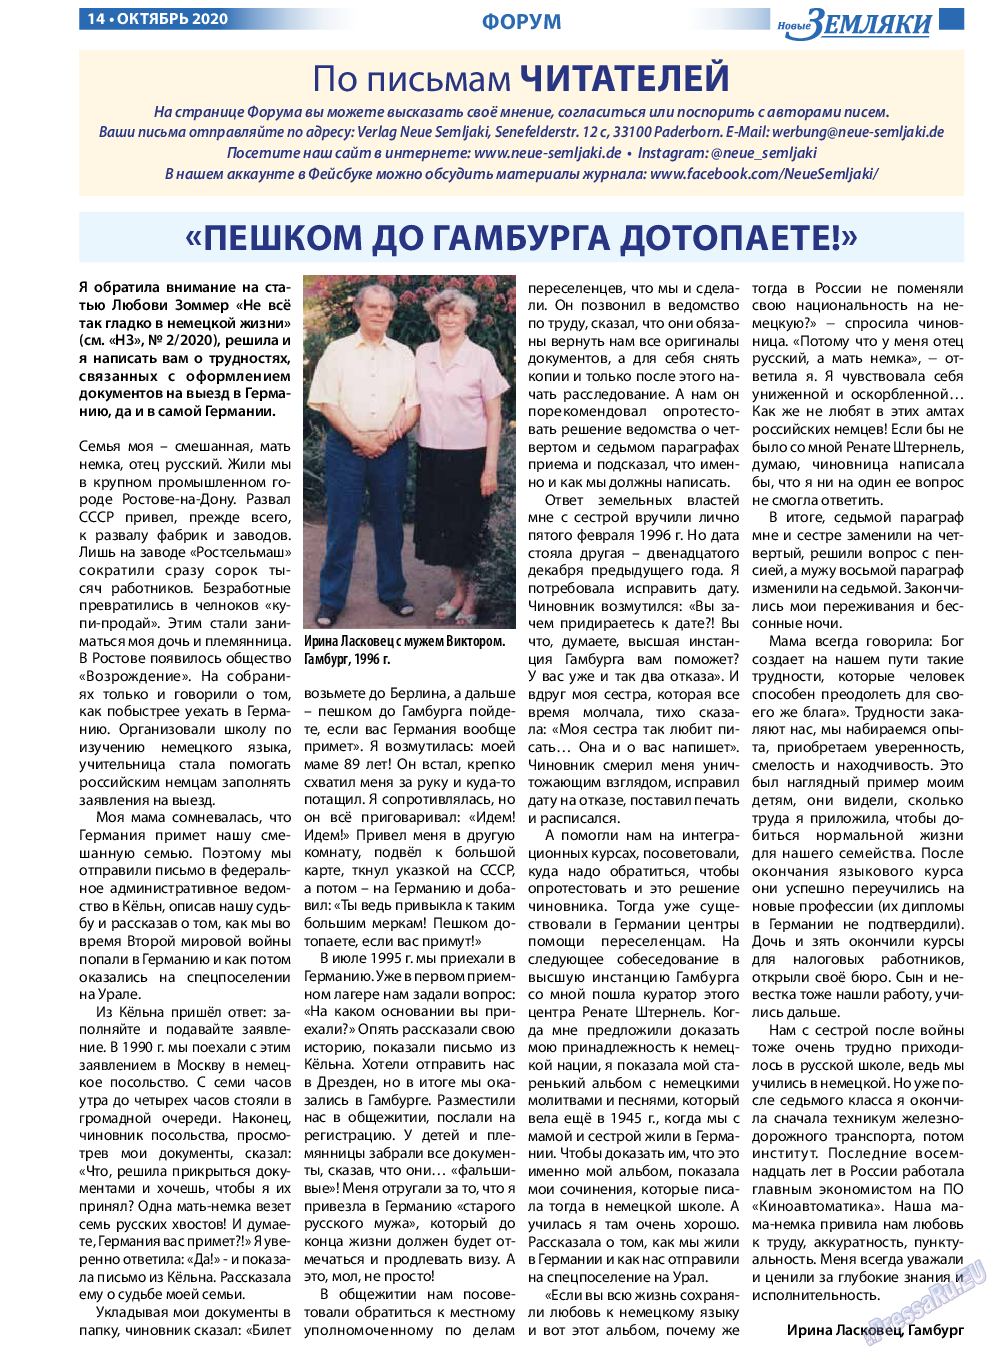 Новые Земляки, газета. 2020 №10 стр.14